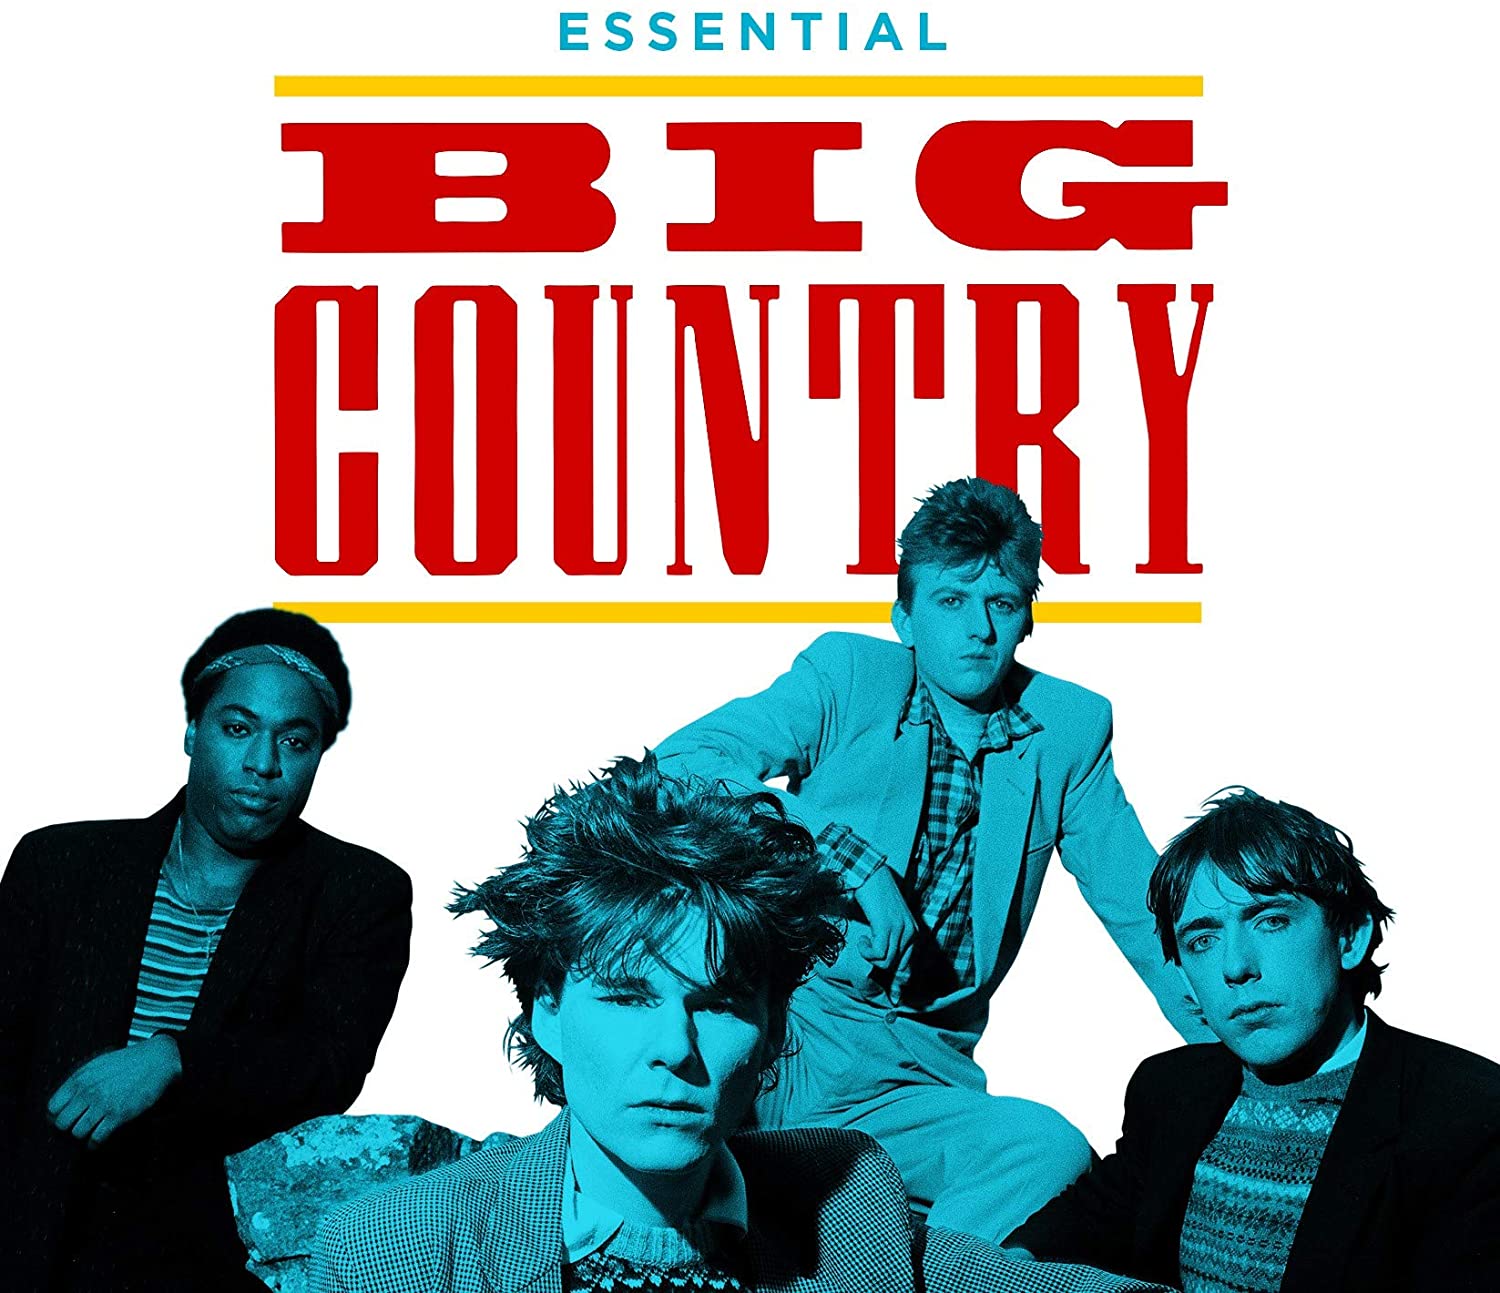 Big Country / Essential 3CD set